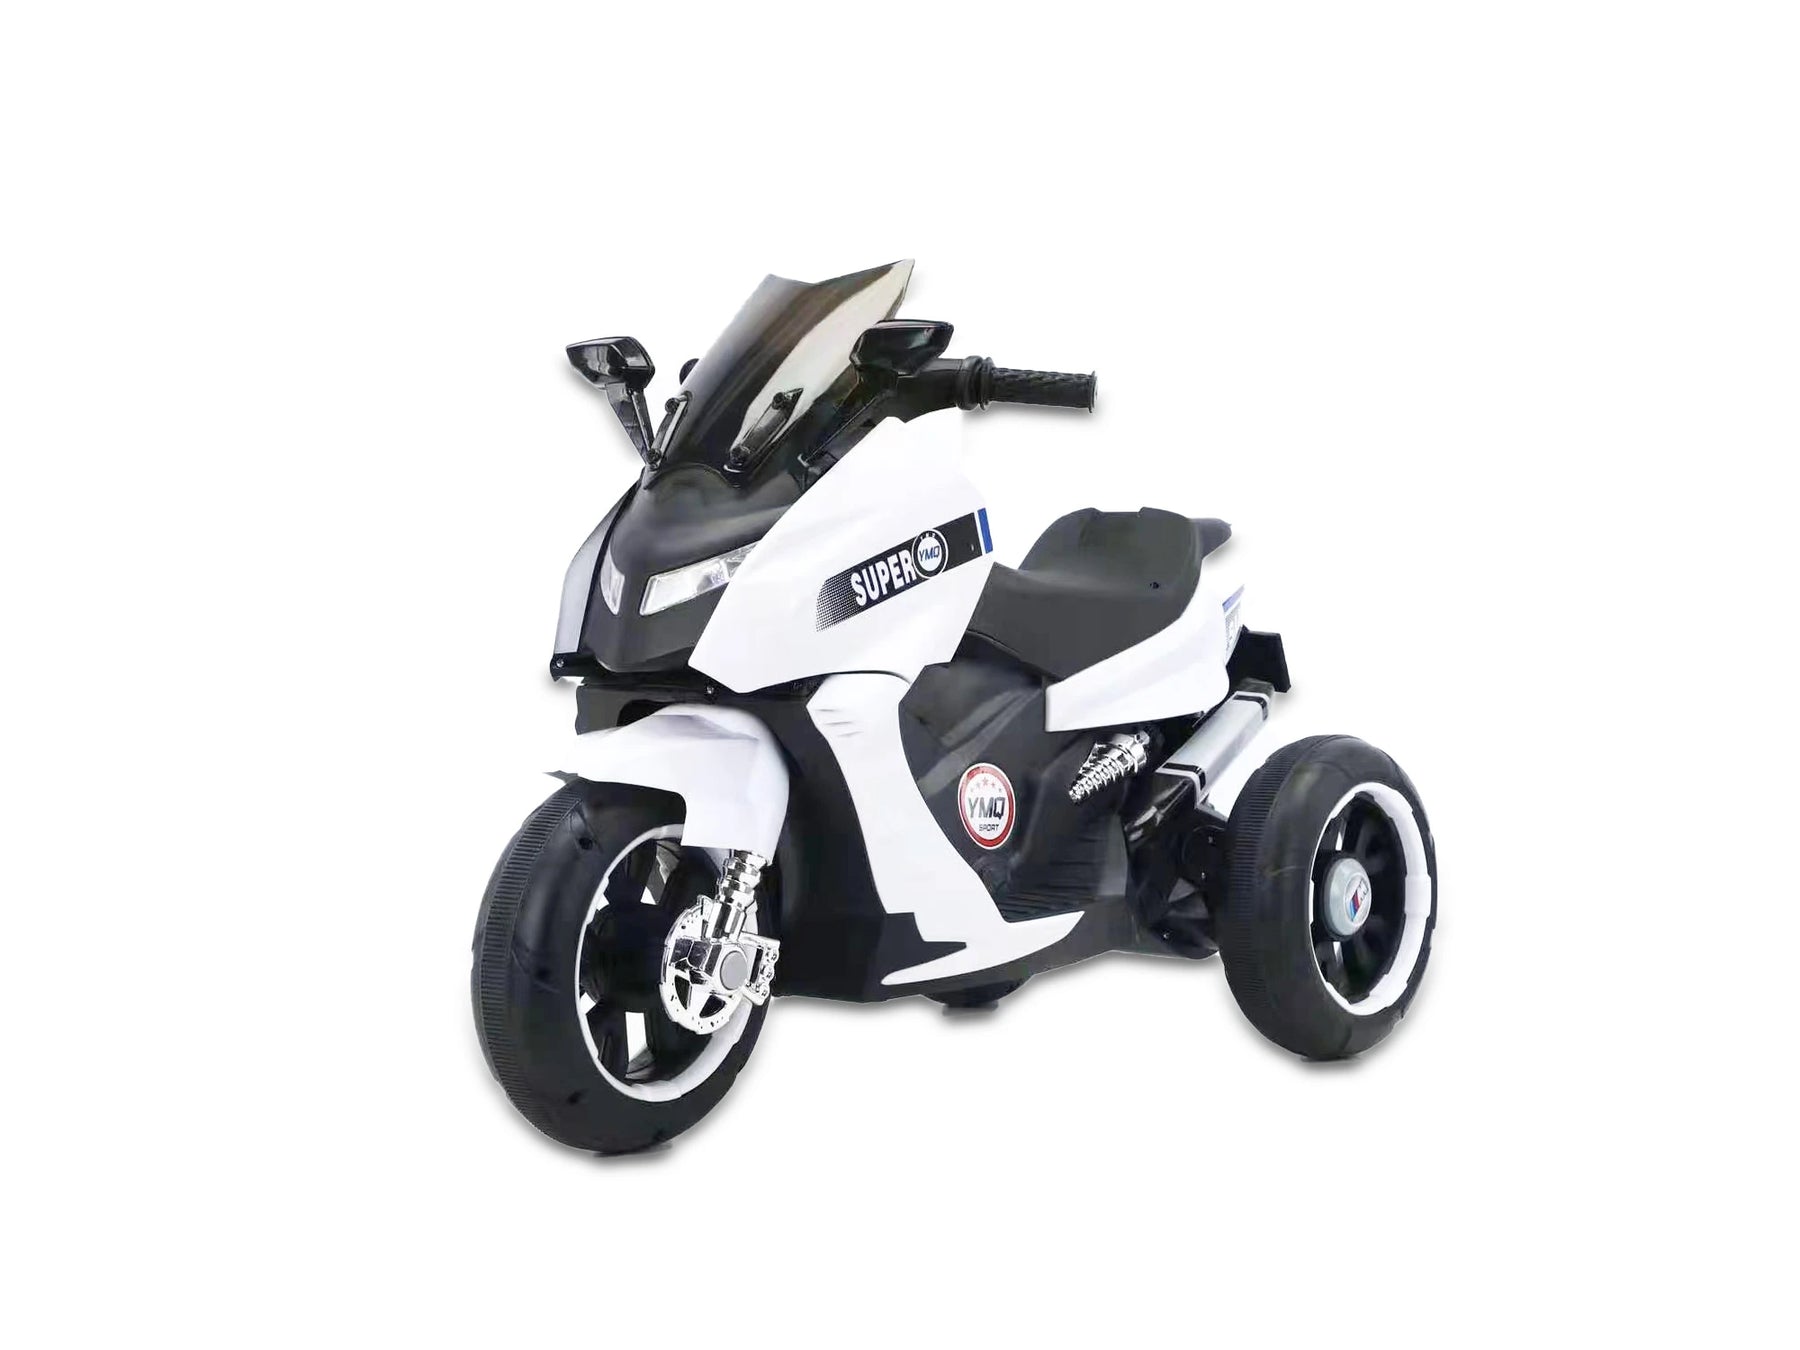 Montable Moto Max Electrica Recargable Para Niños Y Niñas Con Luces Y Bluetooth